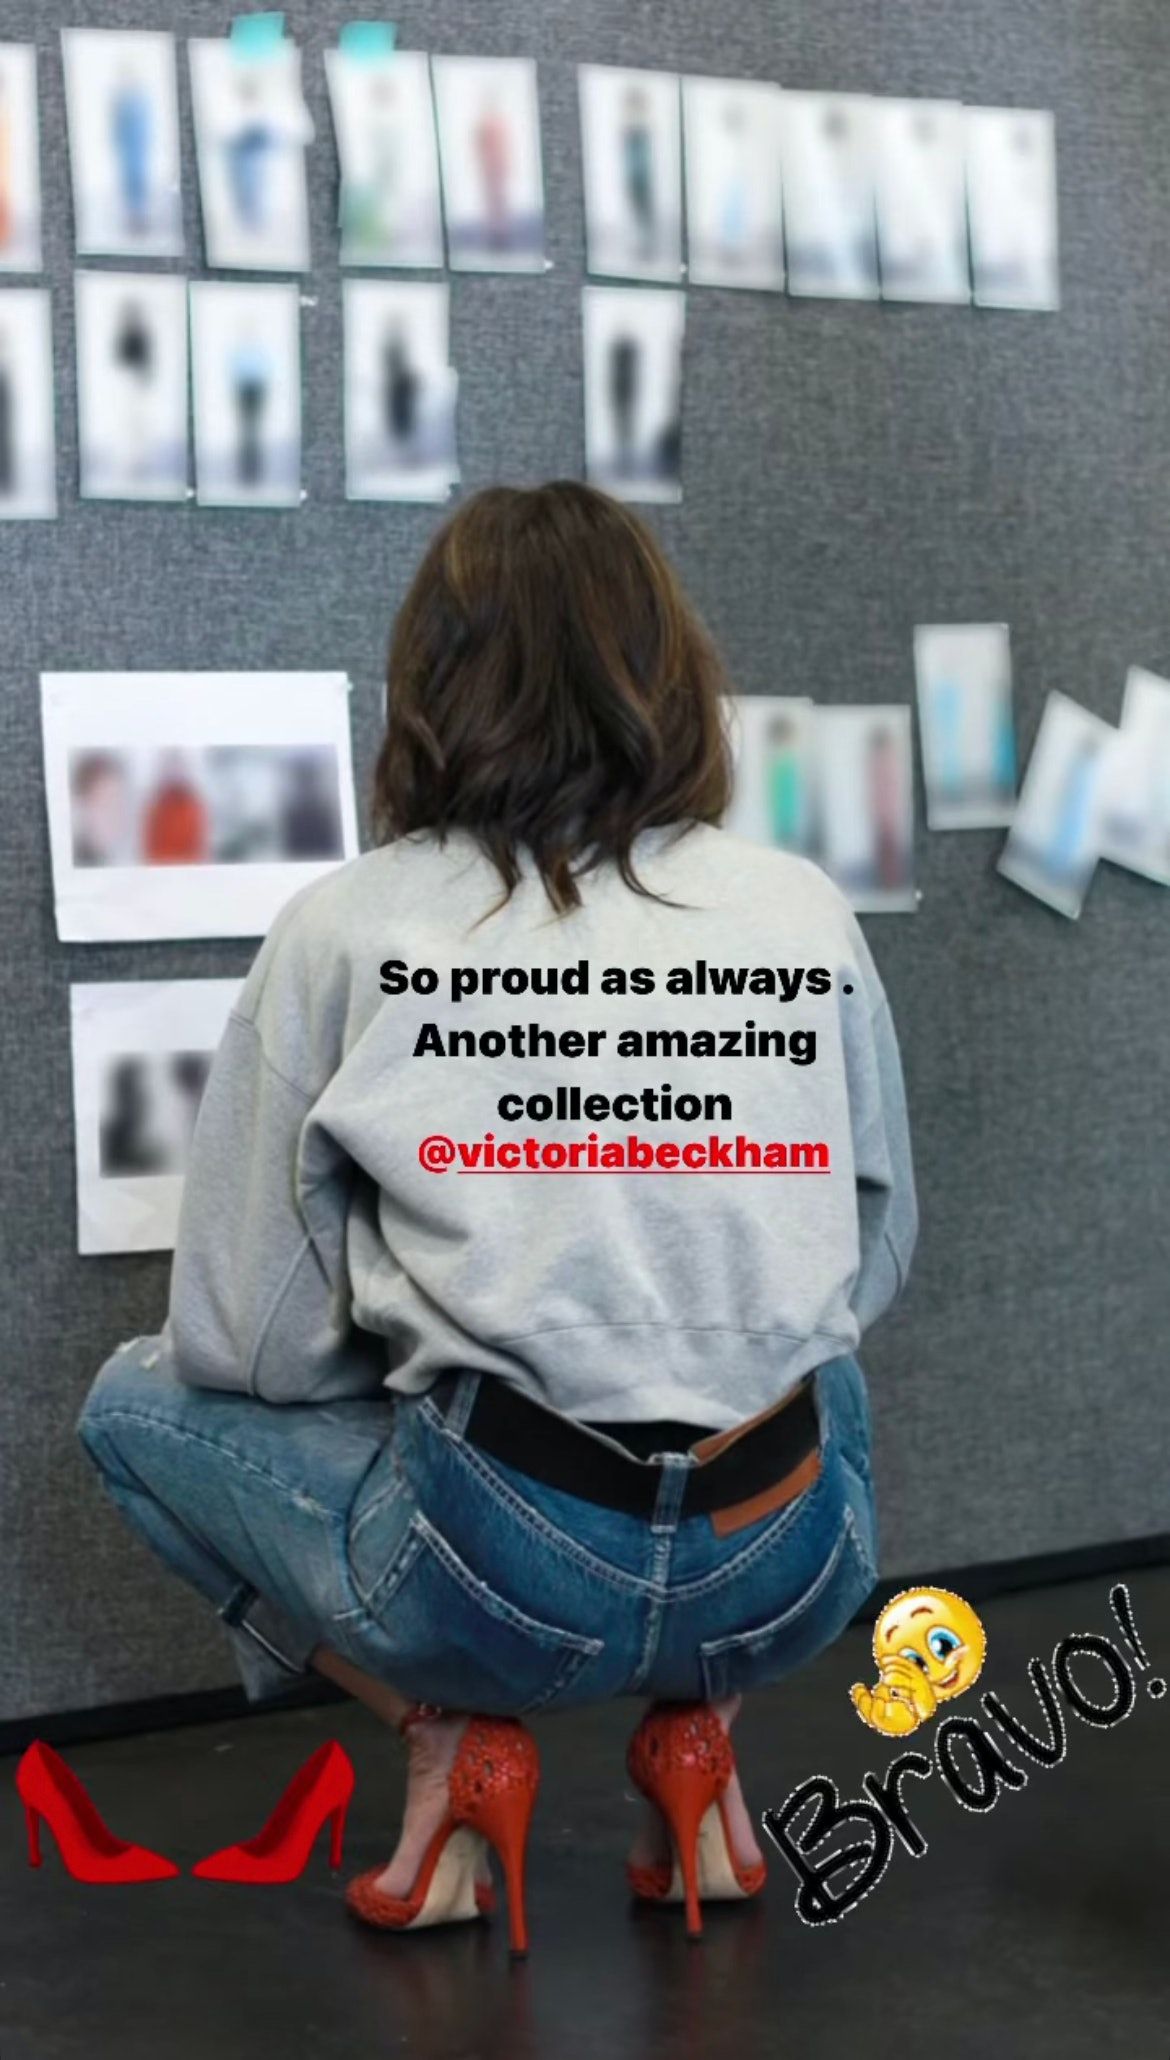 Najnovija modna kolekcija Victoria Beckham inspirirana je Davidom